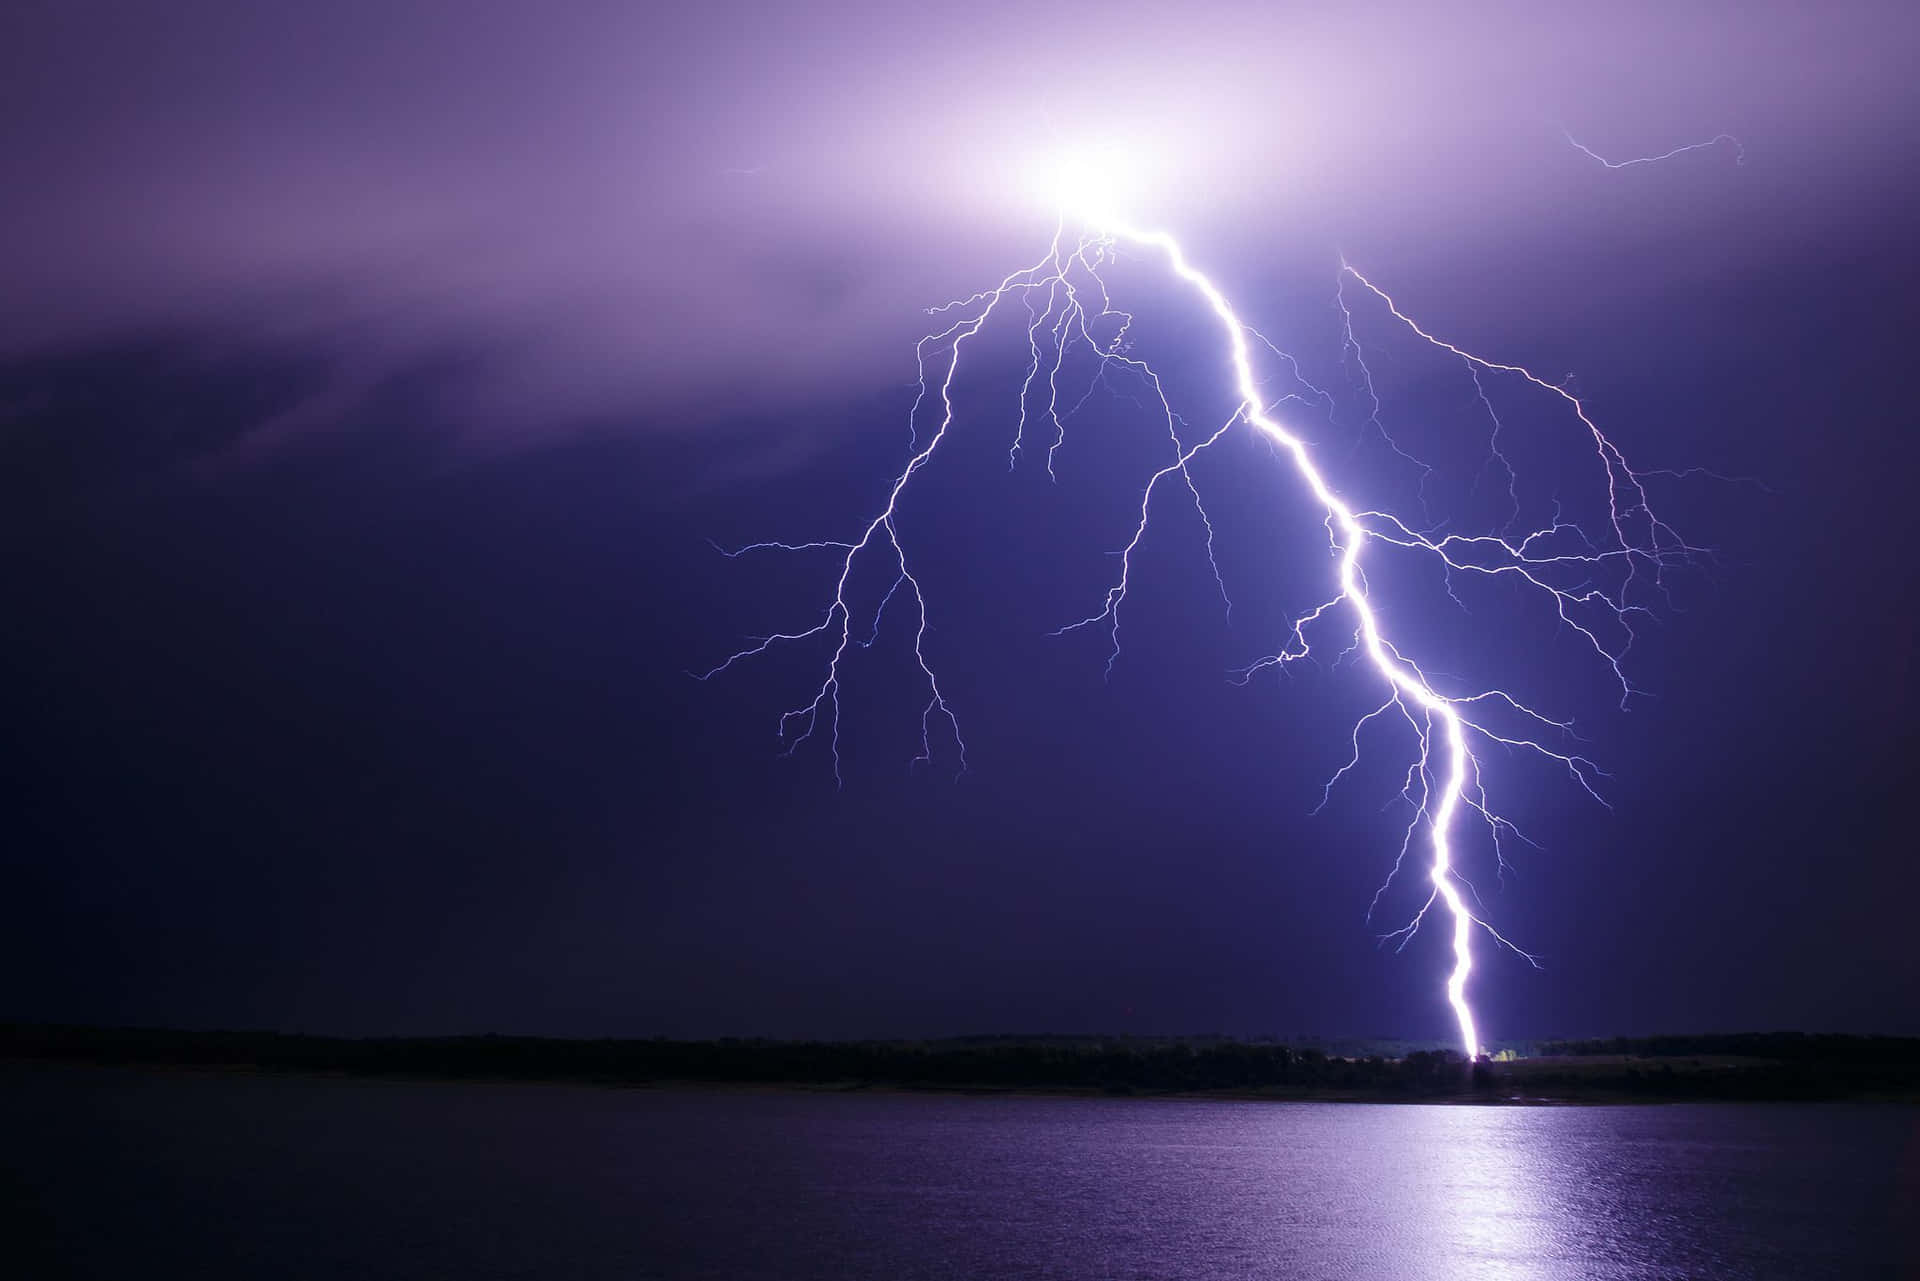 A bolt of lightning strikes at night